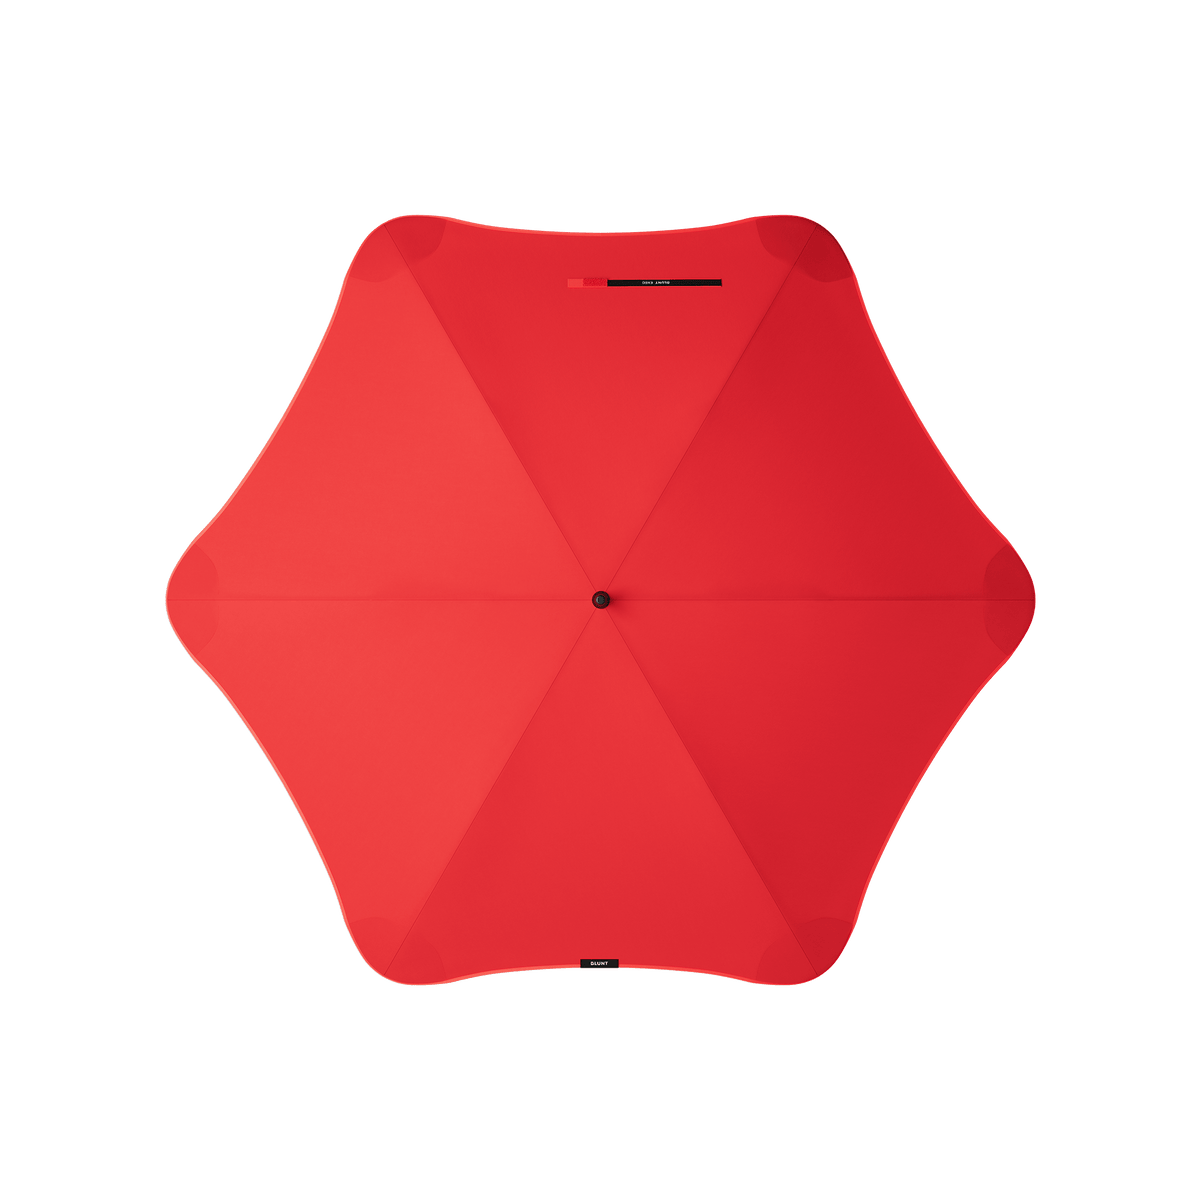 BLUNT Exec Umbrella red top shot